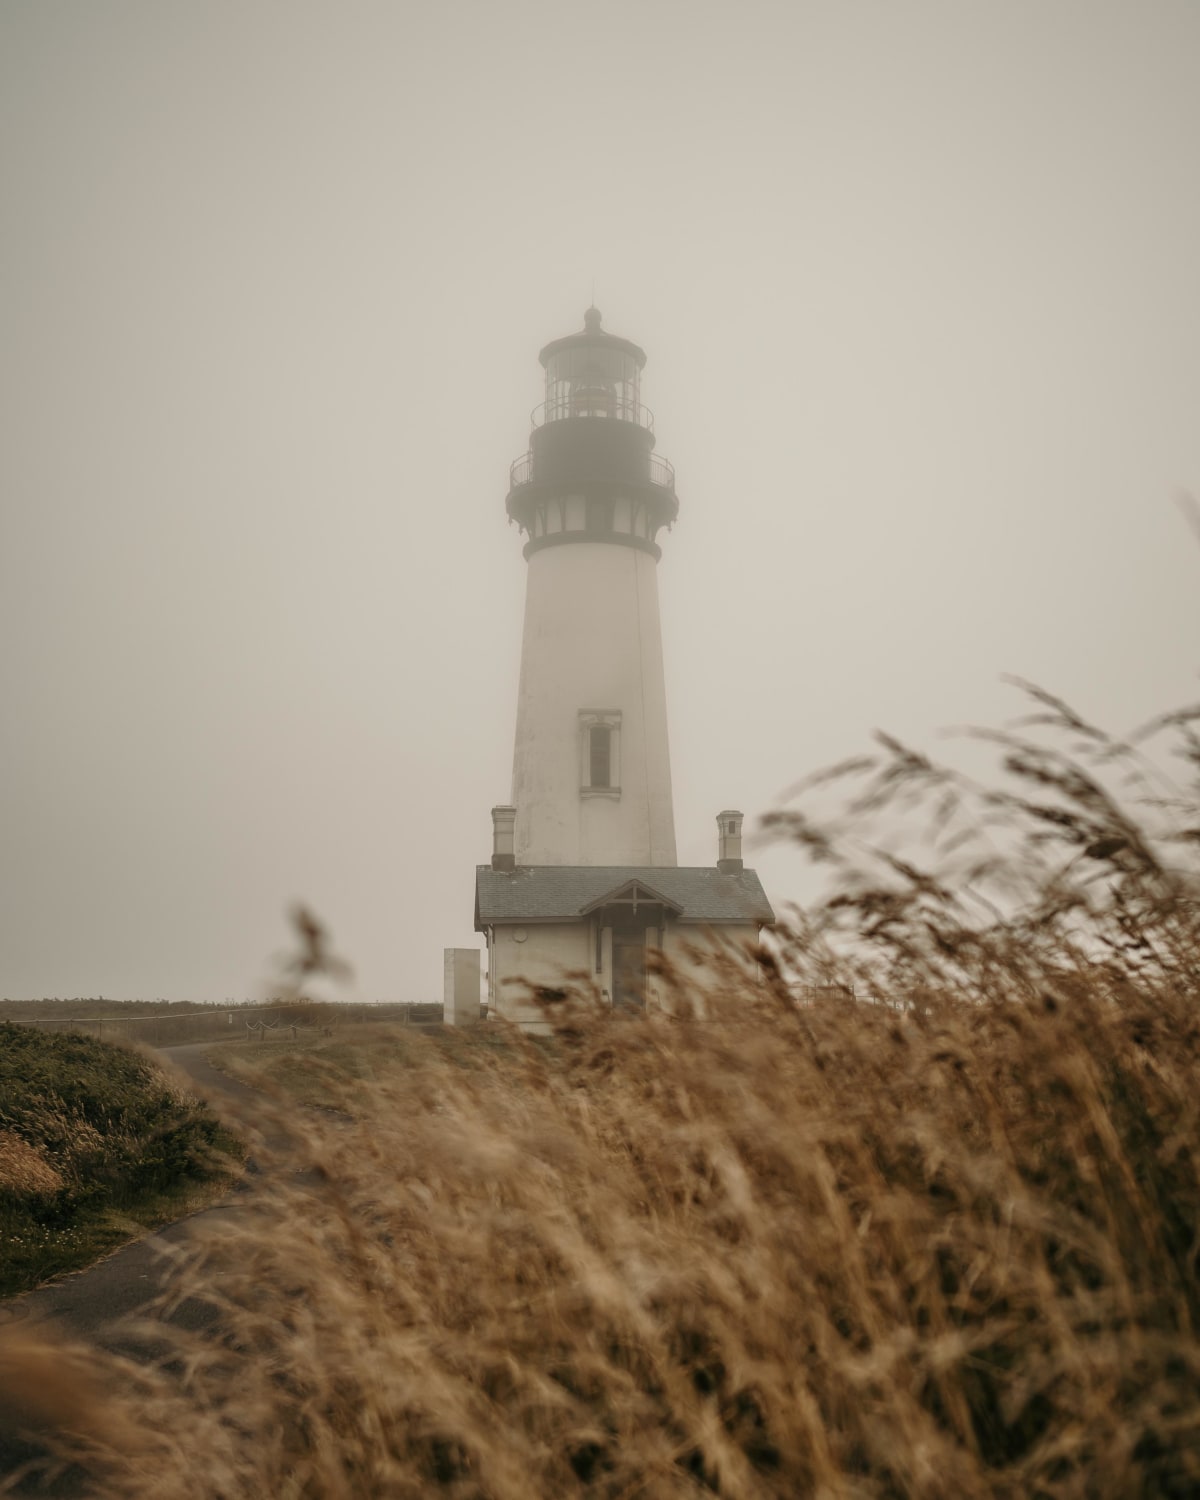 Yaquina Head Lighthouse on the Oregon Coast